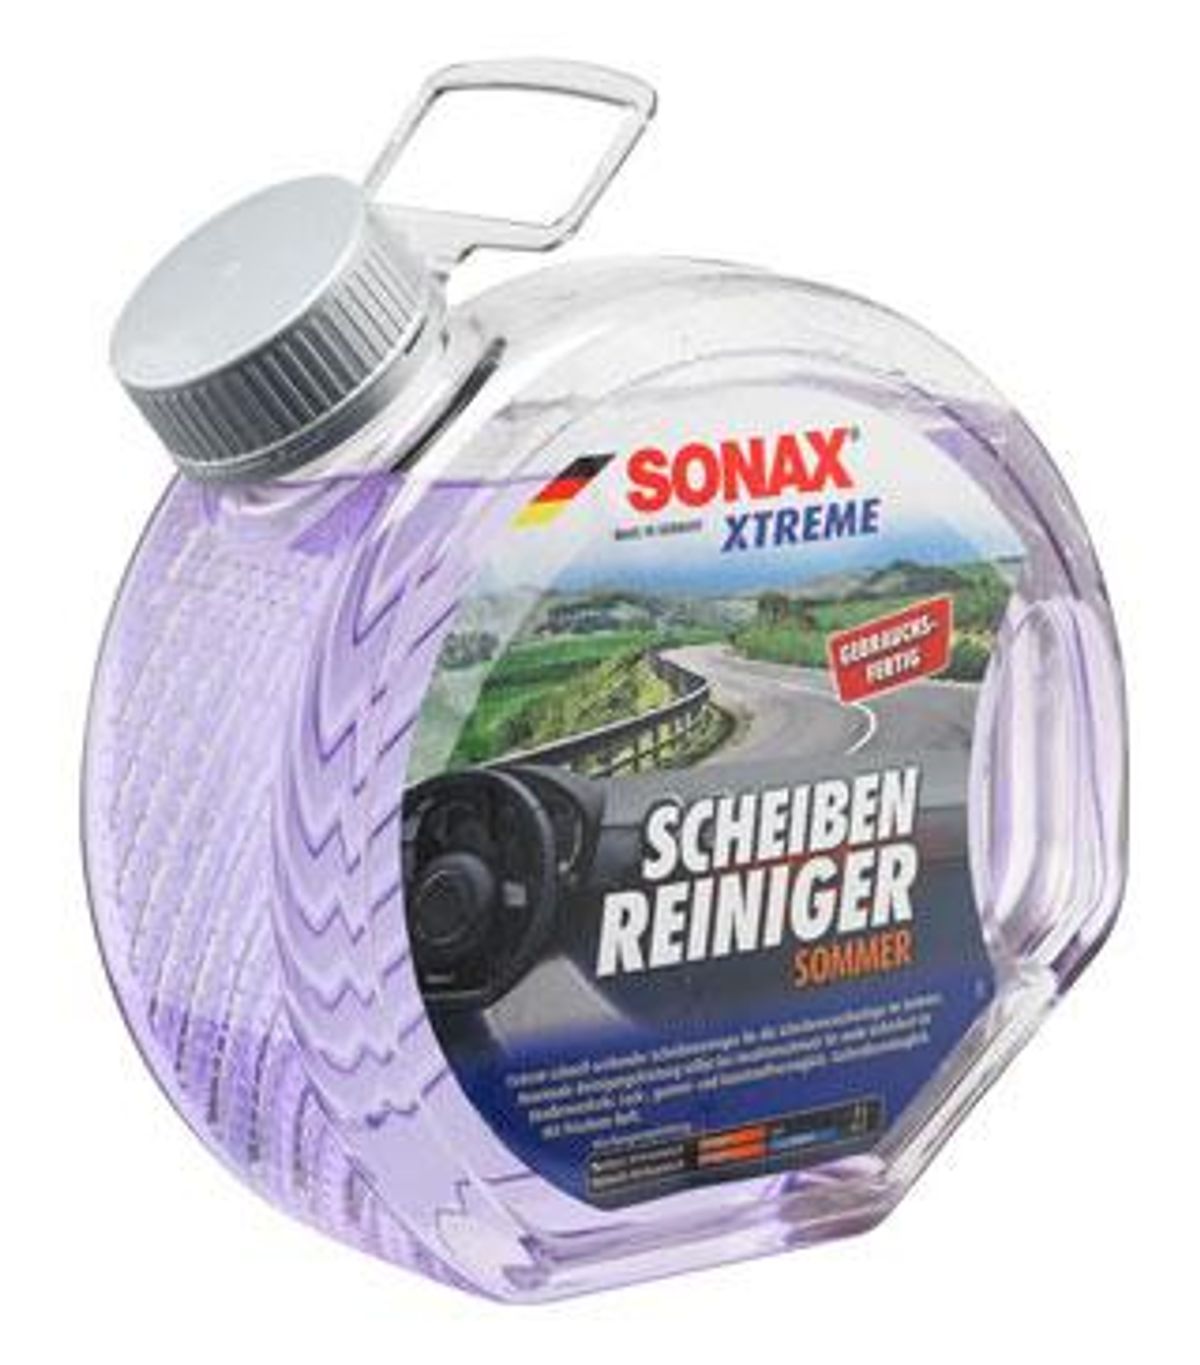 SONAX-Scheibenreiniger-reinigen